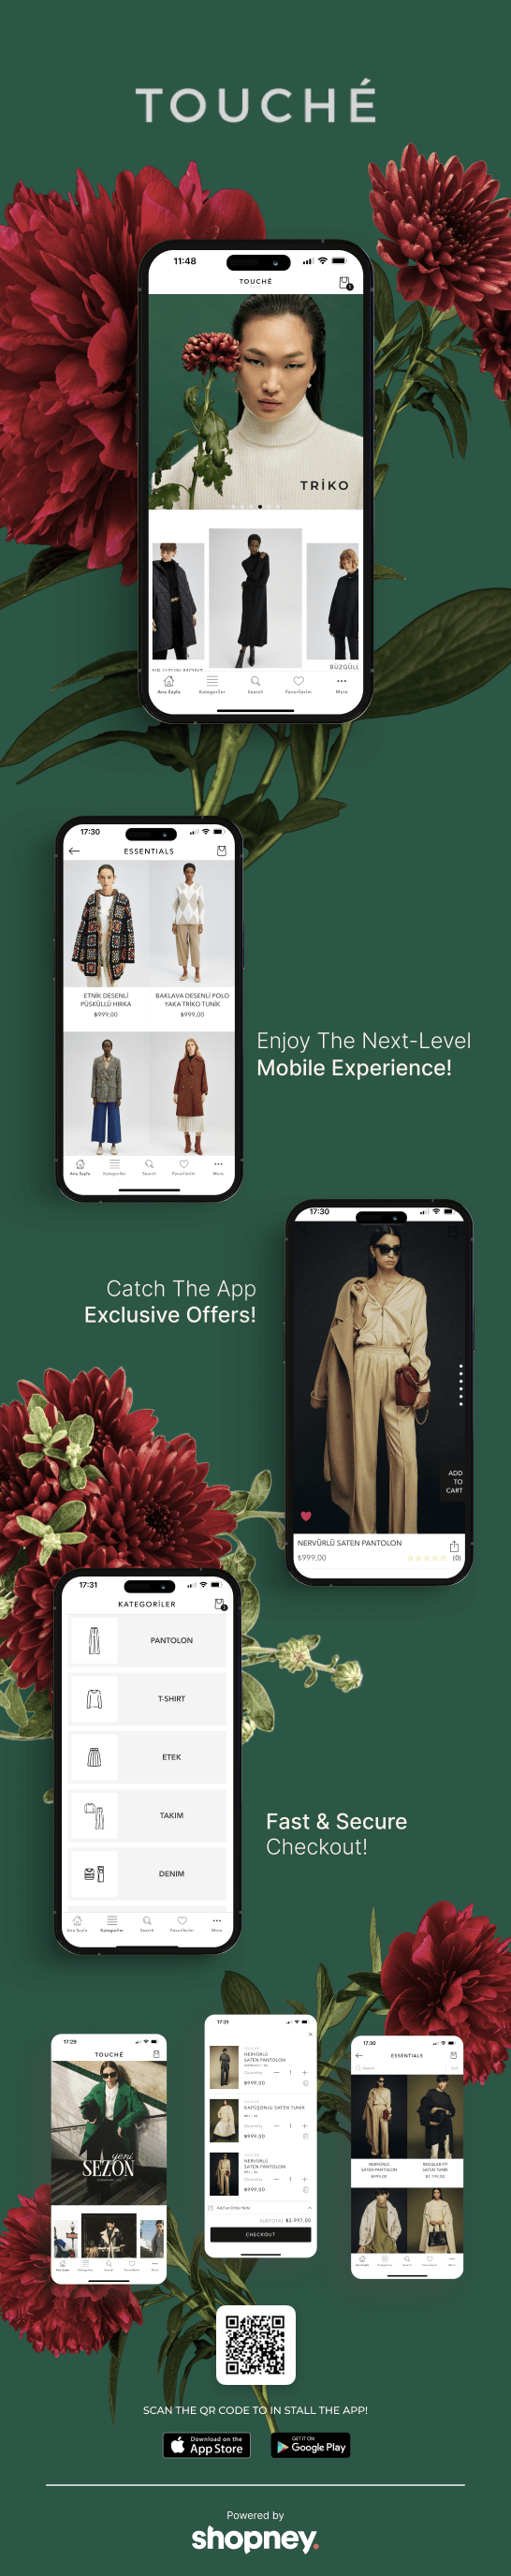 the mobile app design of Touché app